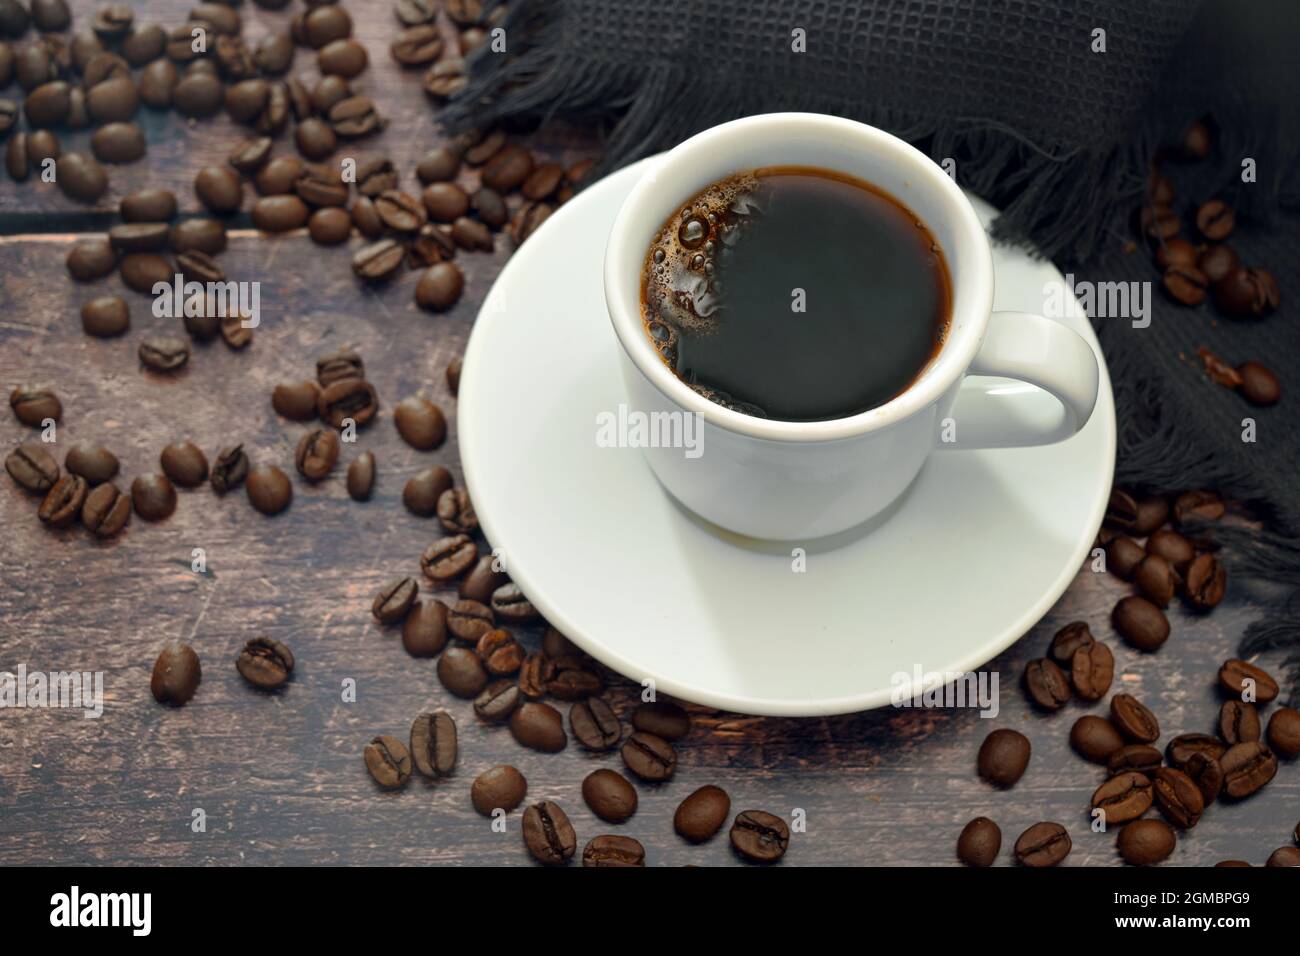 Café negro intenso en una taza blanca sobre una mesa de madera rústica oscura con algunos frijoles, espacio de copia, enfoque seleccionado, profundidad de campo estrecha Foto de stock